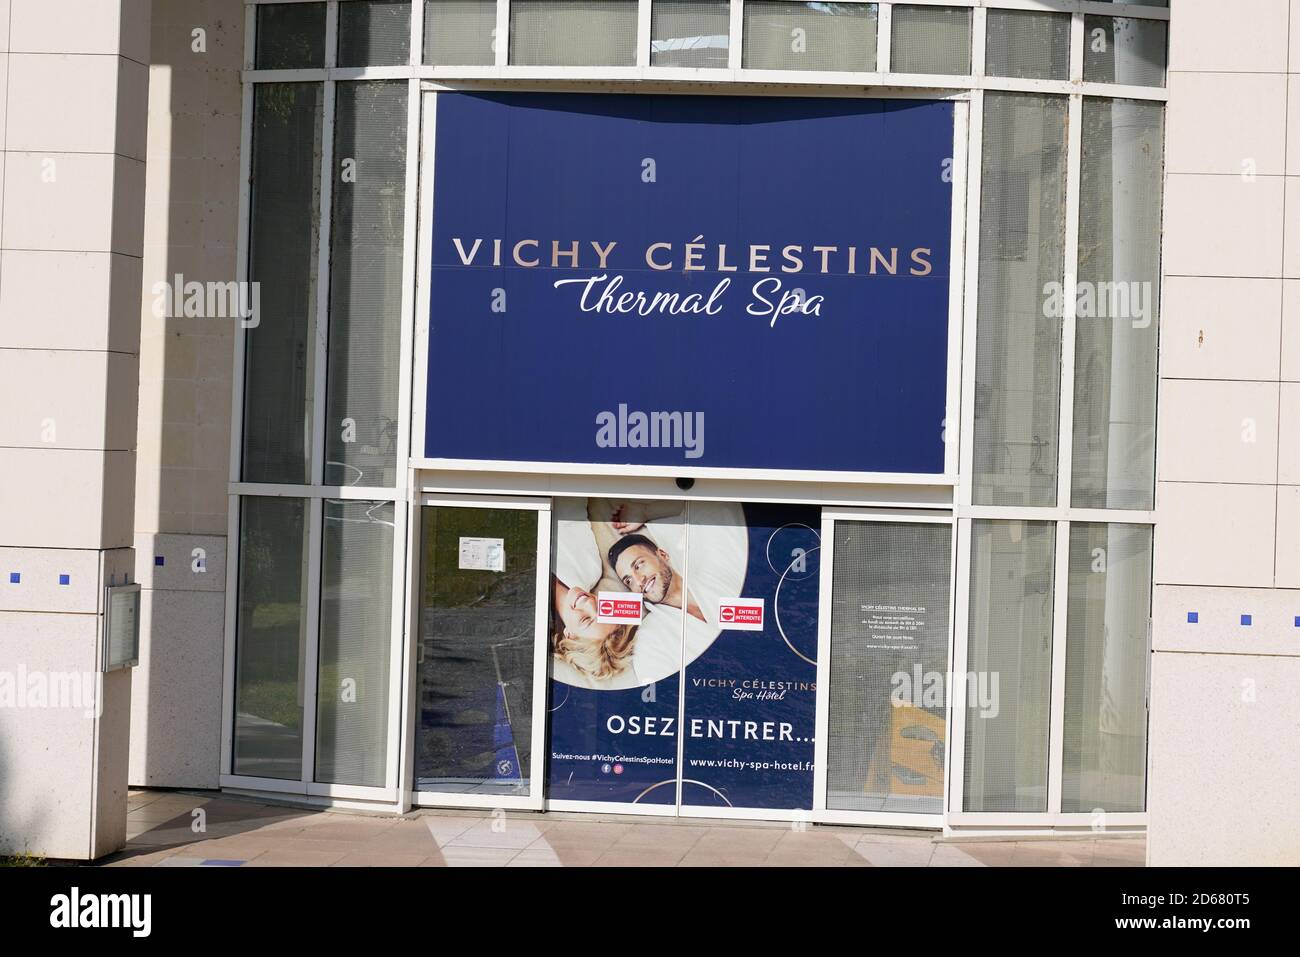 Bordeaux , Aquitaine / France - 10 10 2020 : Vichy Celestins Thermal Spa signe bleu texte d'entrée dans la ville de Vichy France Banque D'Images